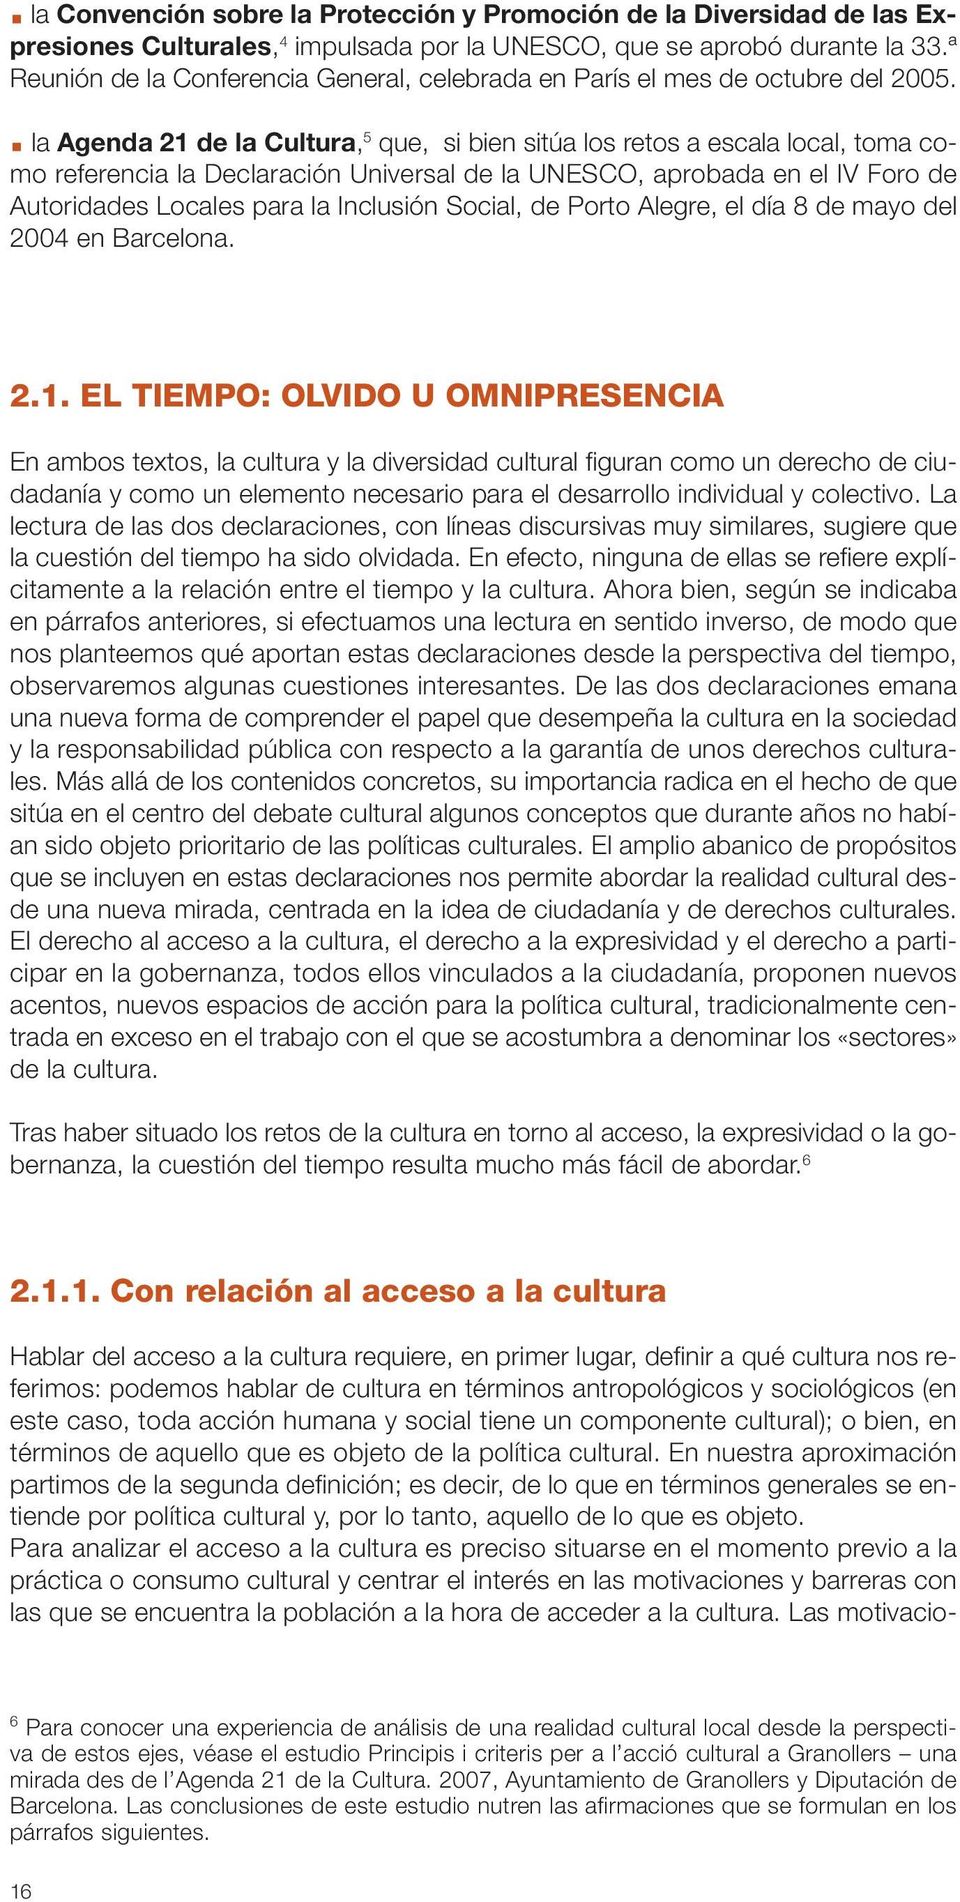 la Agenda 21 de la Cultura, 5 que, si bien sitúa los retos a escala local, toma como referencia la Declaración Universal de la UNESCO, aprobada en el IV Foro de Autoridades Locales para la Inclusión